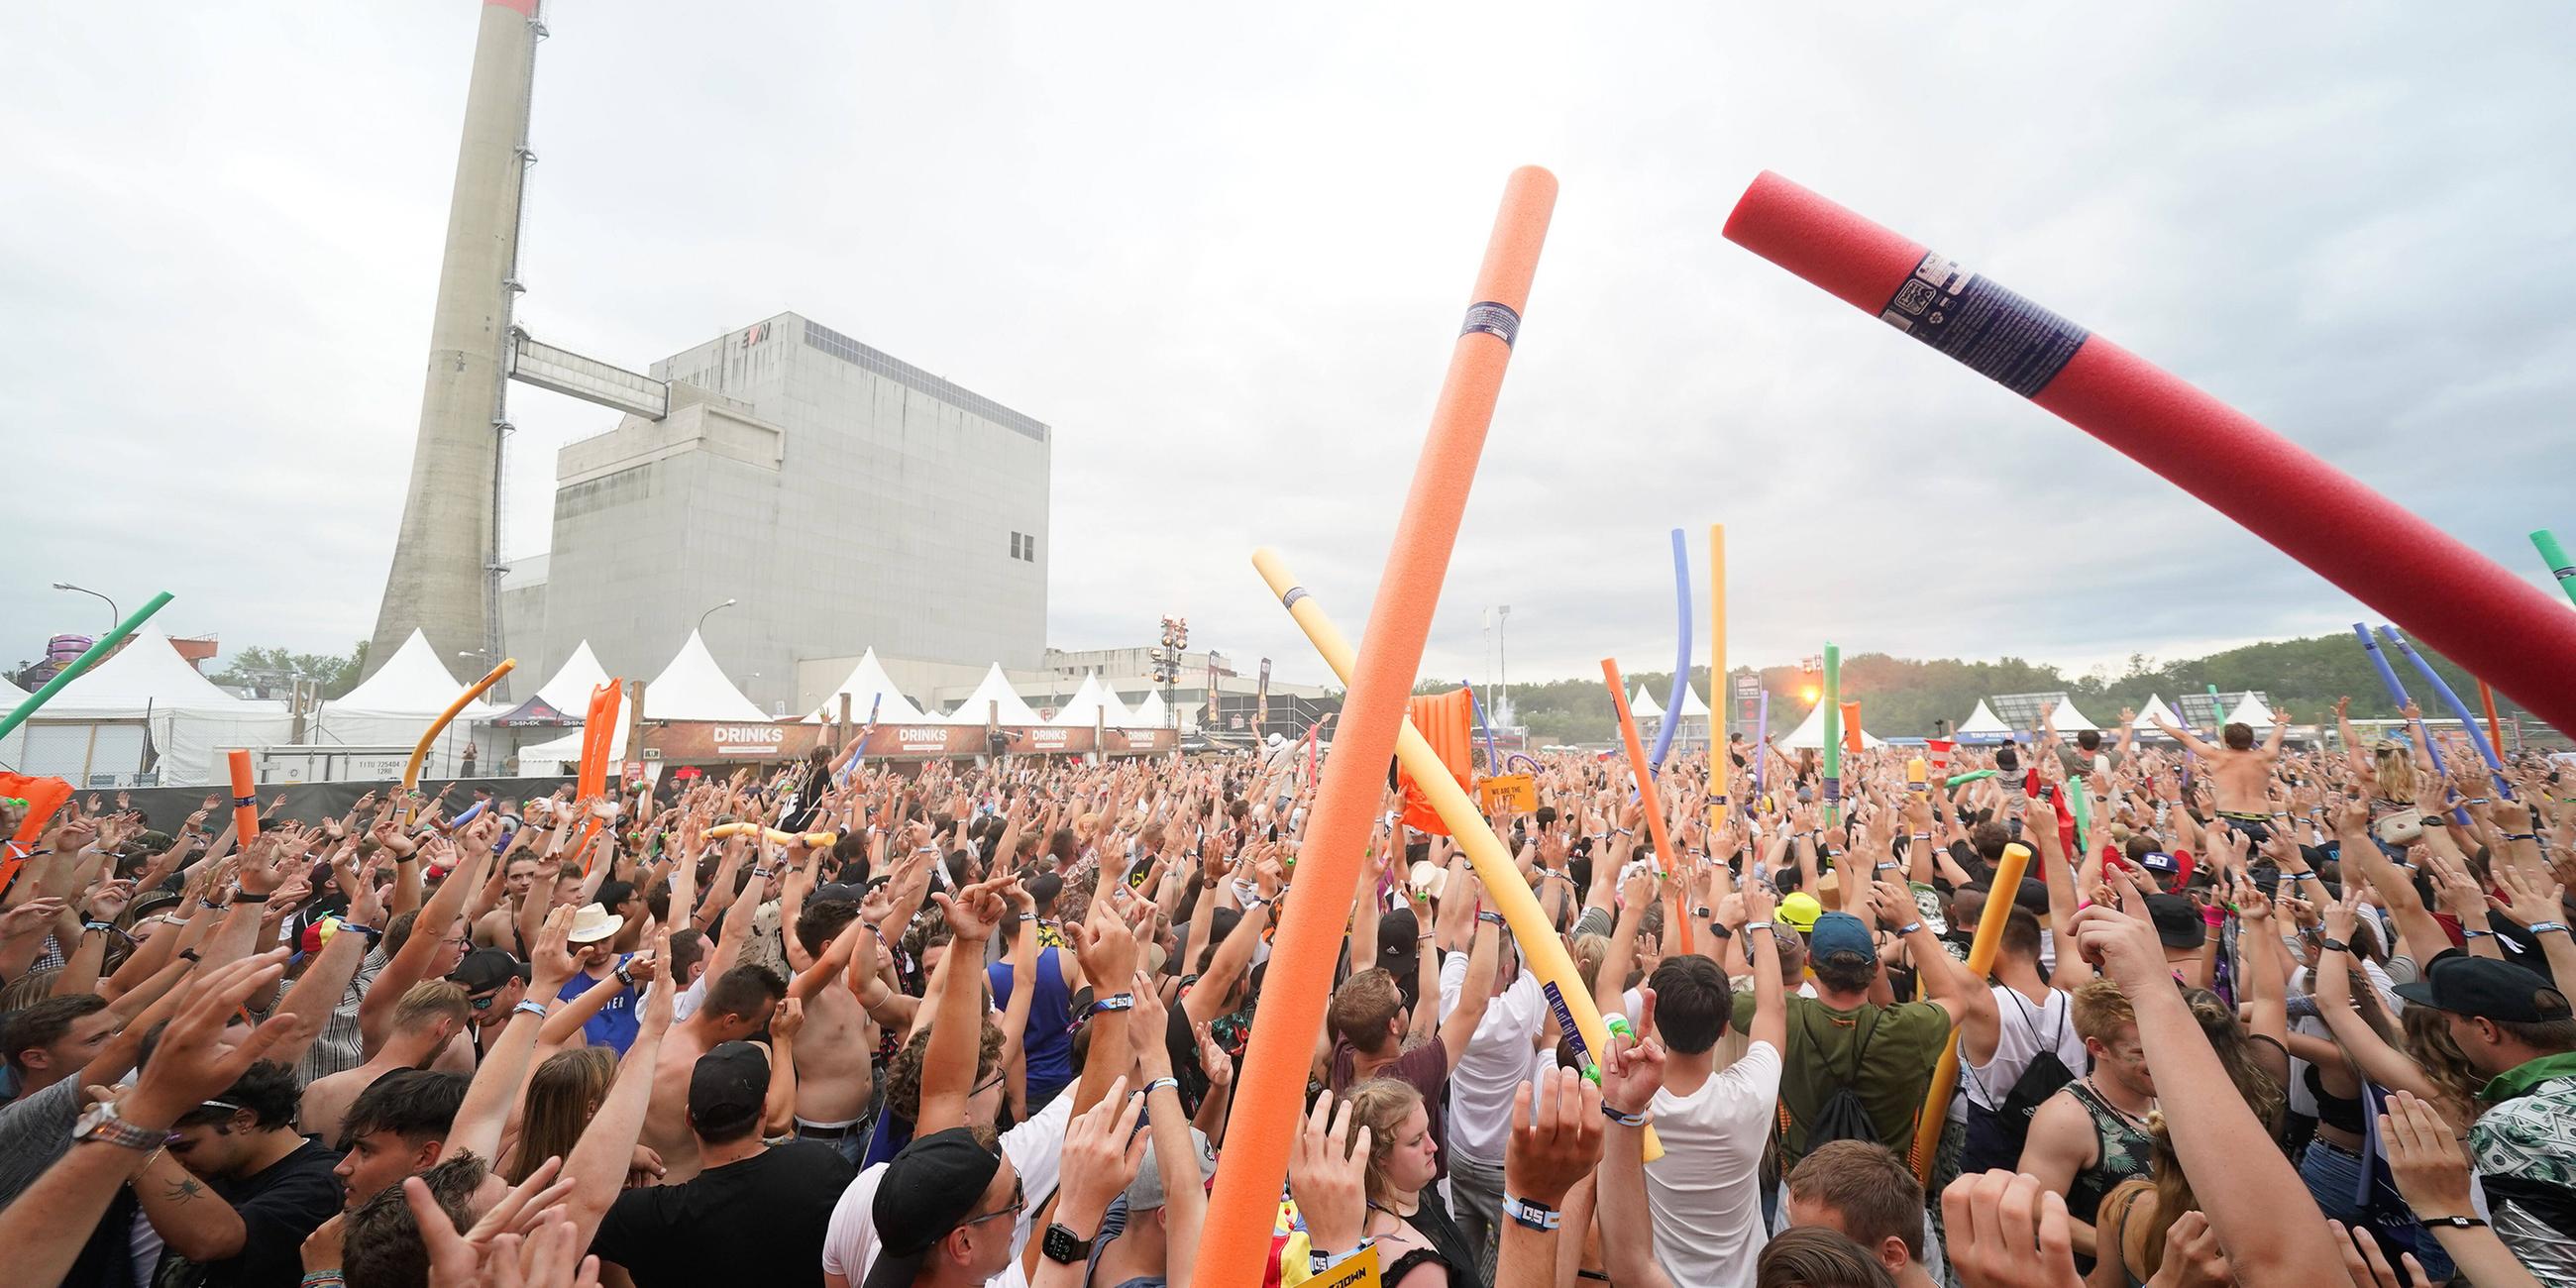 Eine Menschenmenge beim Musikfestival Shutdown auf dem Gelände des nie in Betrieb gegangenen Kernkraftwerks Zwetendorf in Österreich.